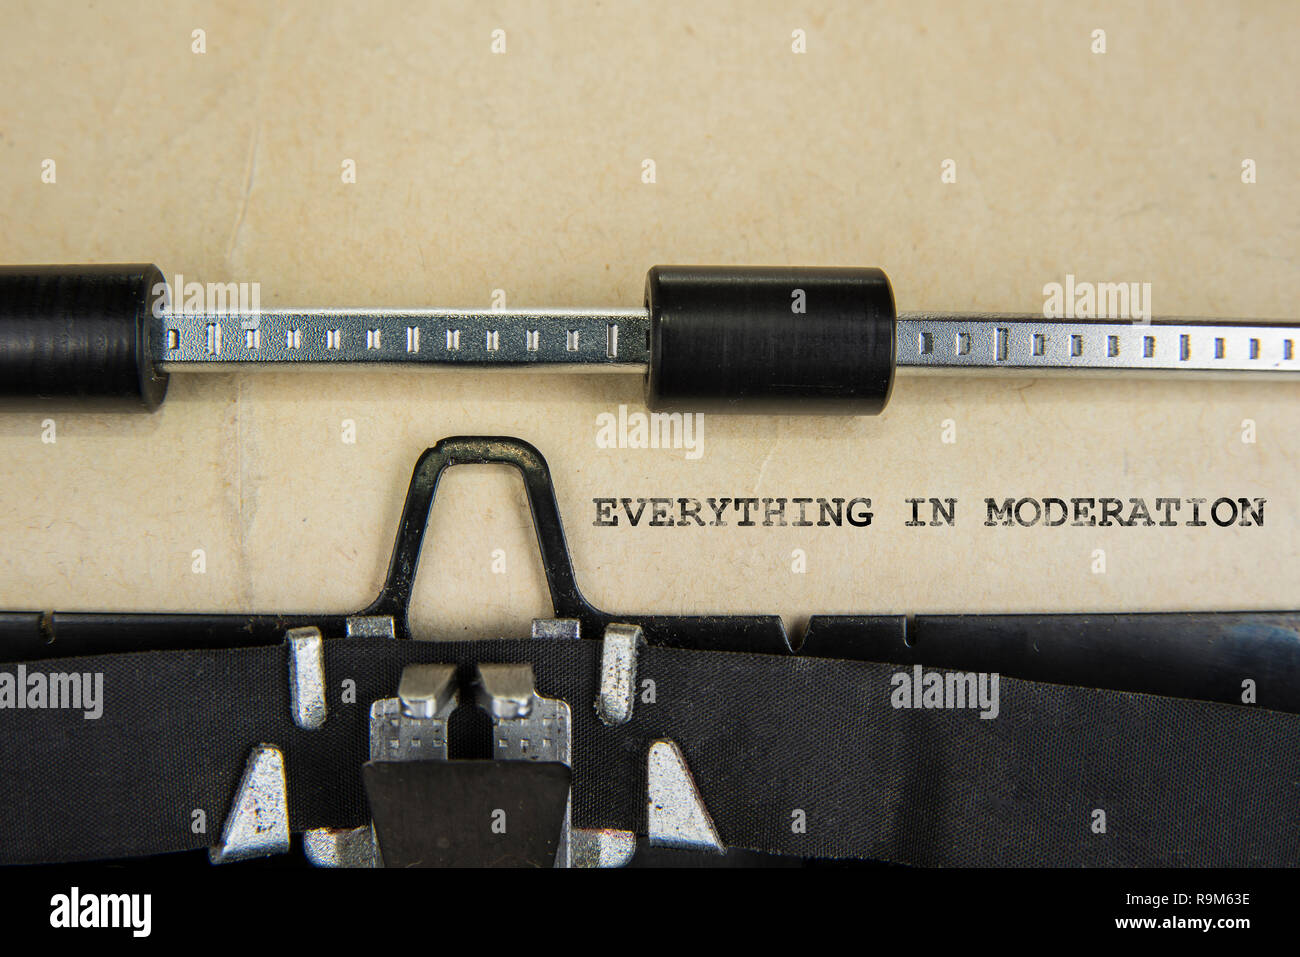 Signe de motivation tout dans la modération écrit sur vieille machine à écrire Banque D'Images